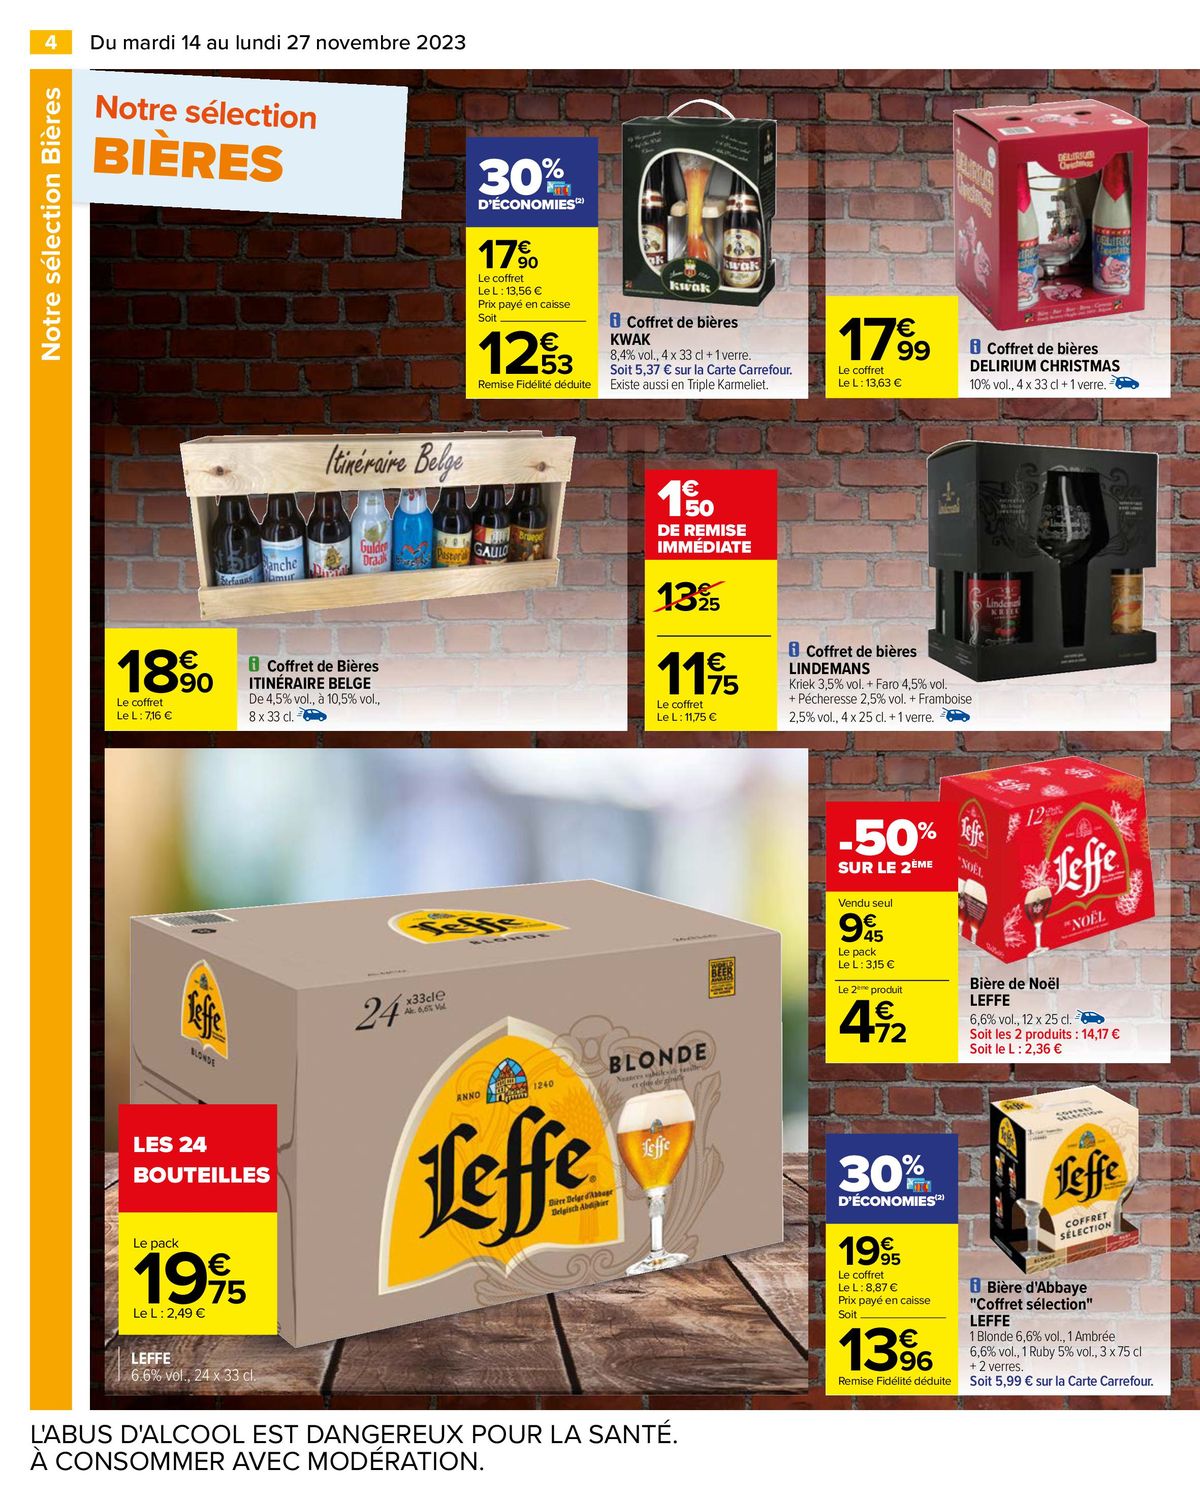 Catalogue Notre sélection Bières & Alcools, page 00006